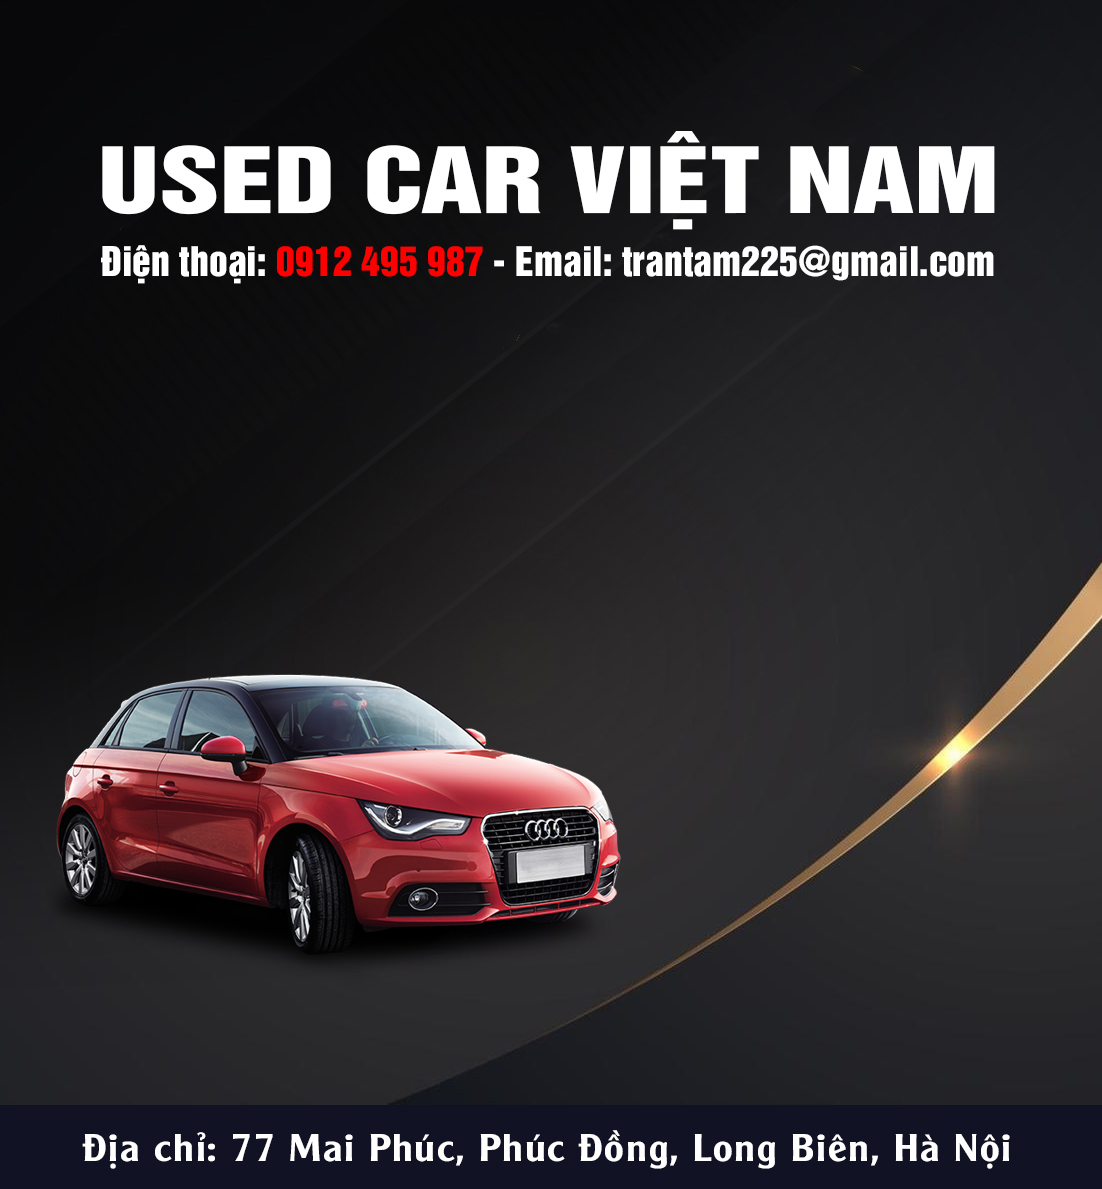 Used Car Viet Nam